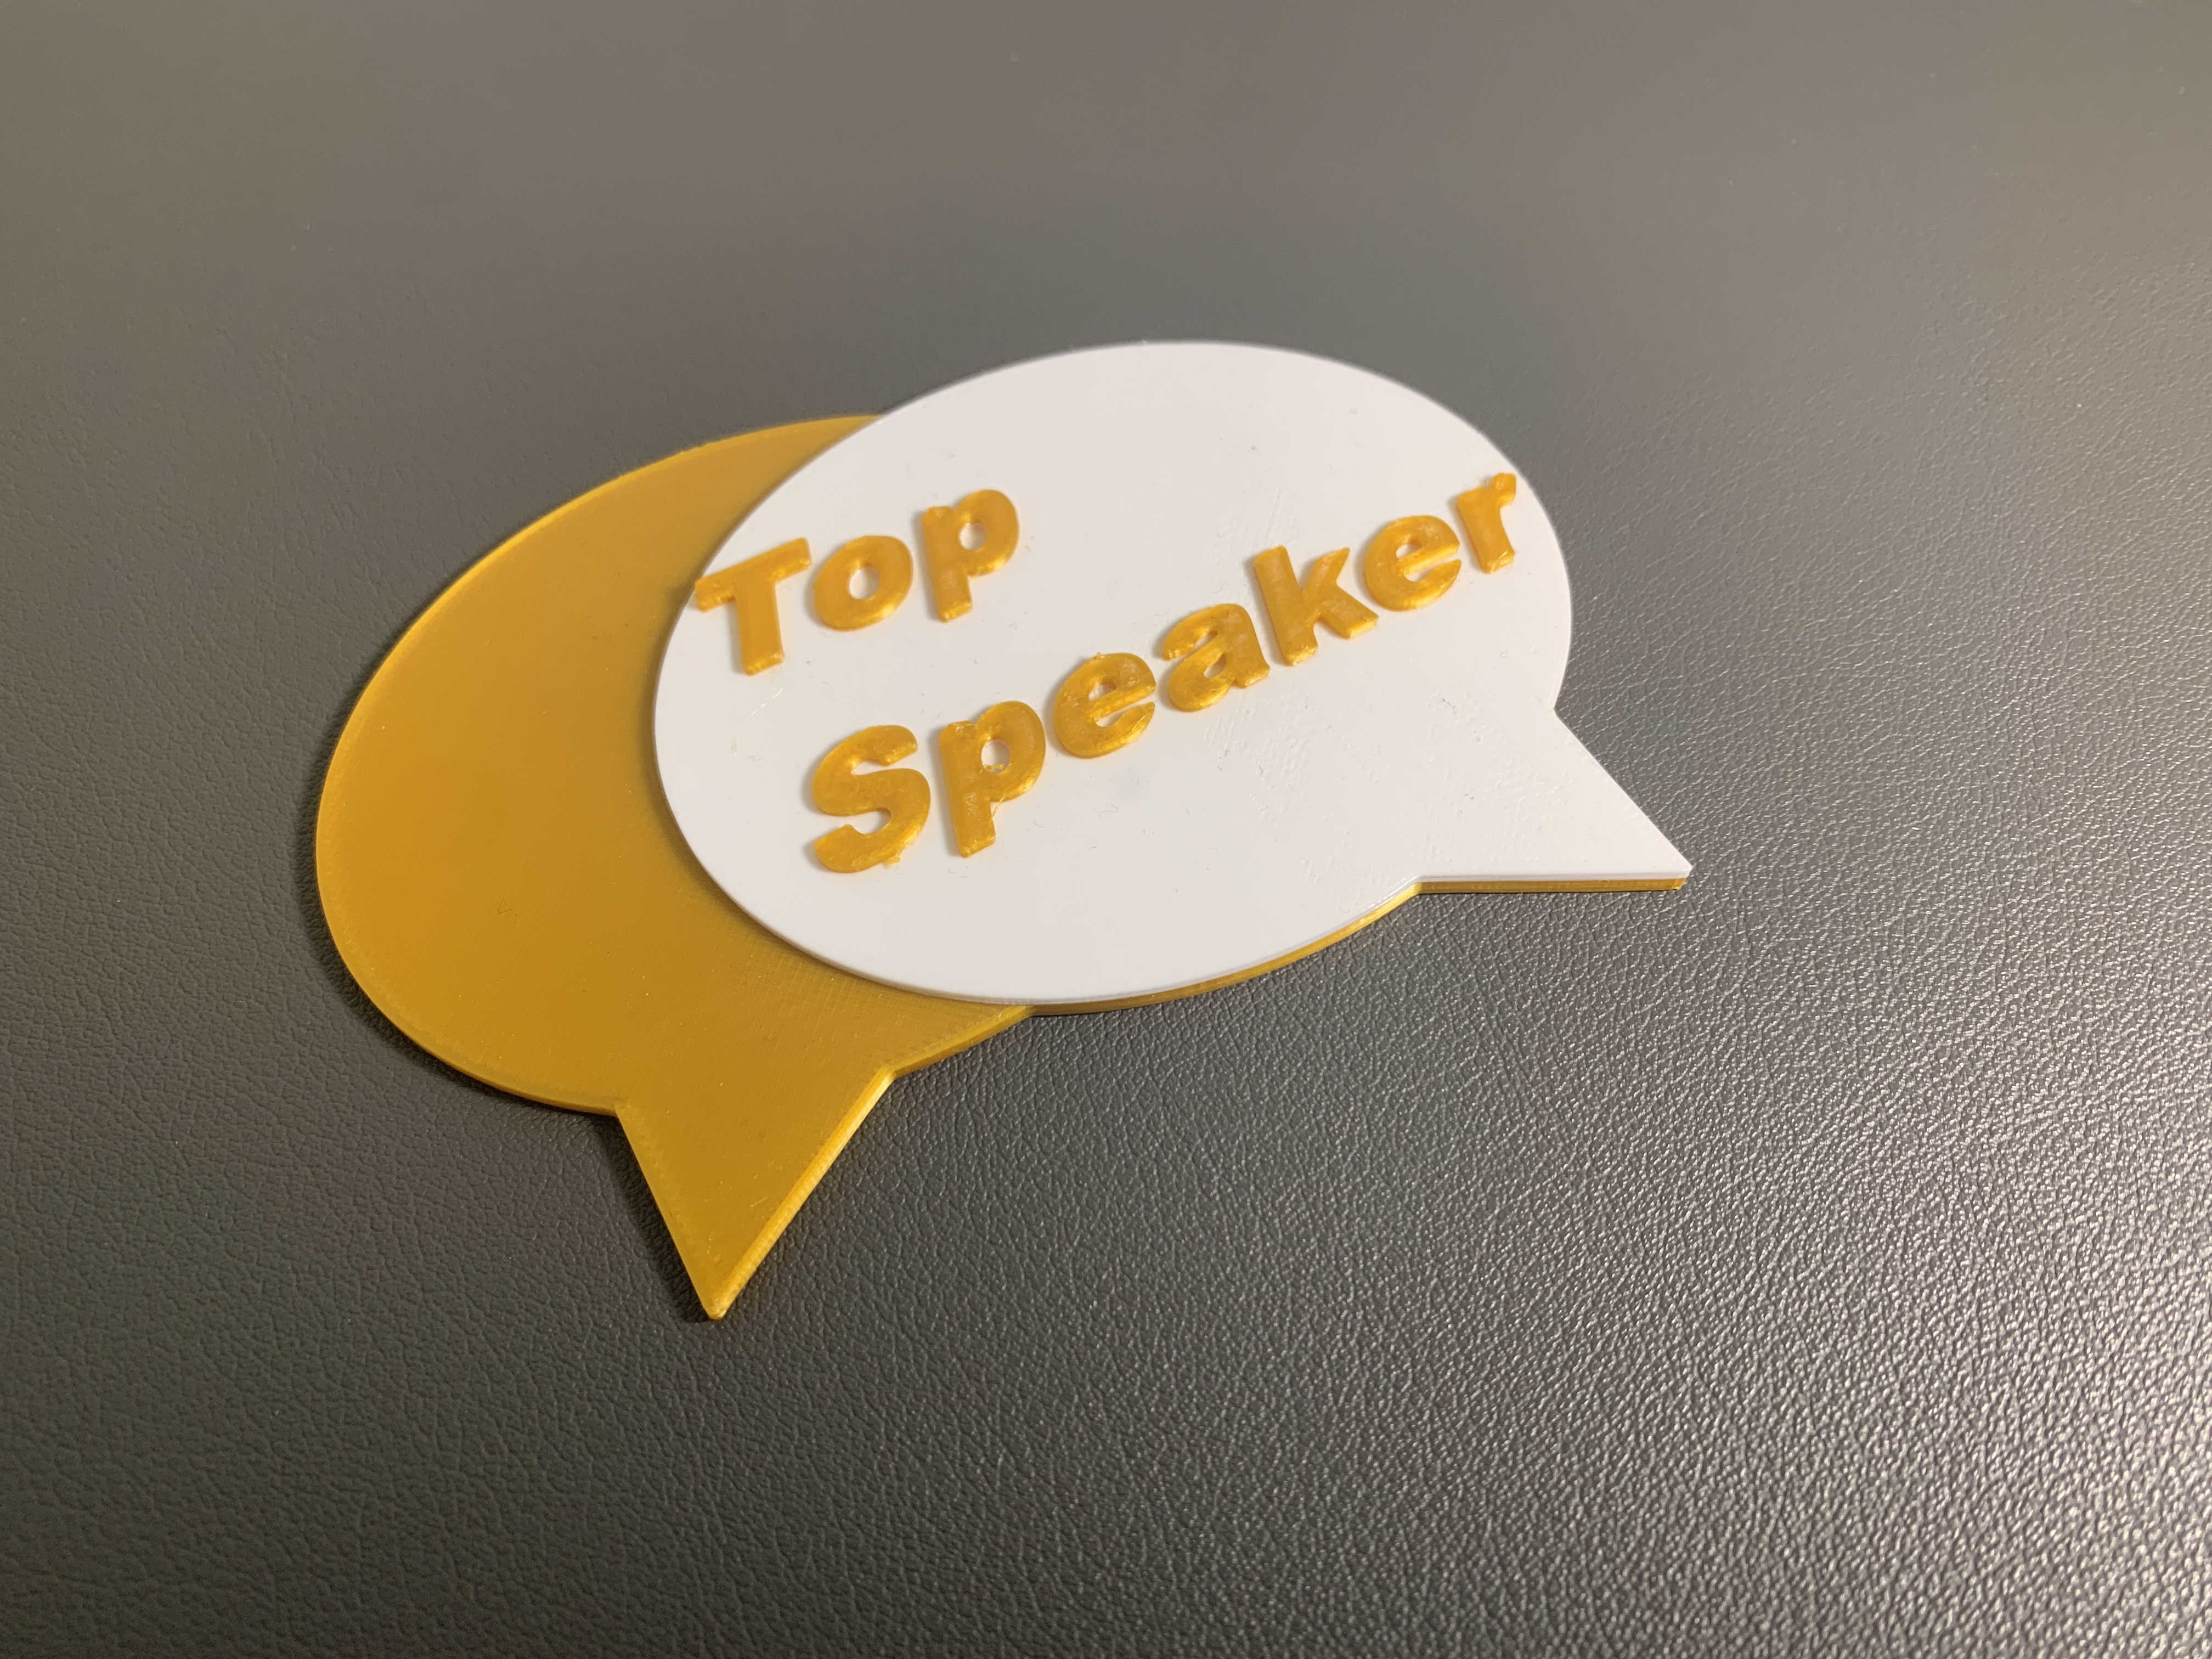 Debate Tournament Top Speaker Award